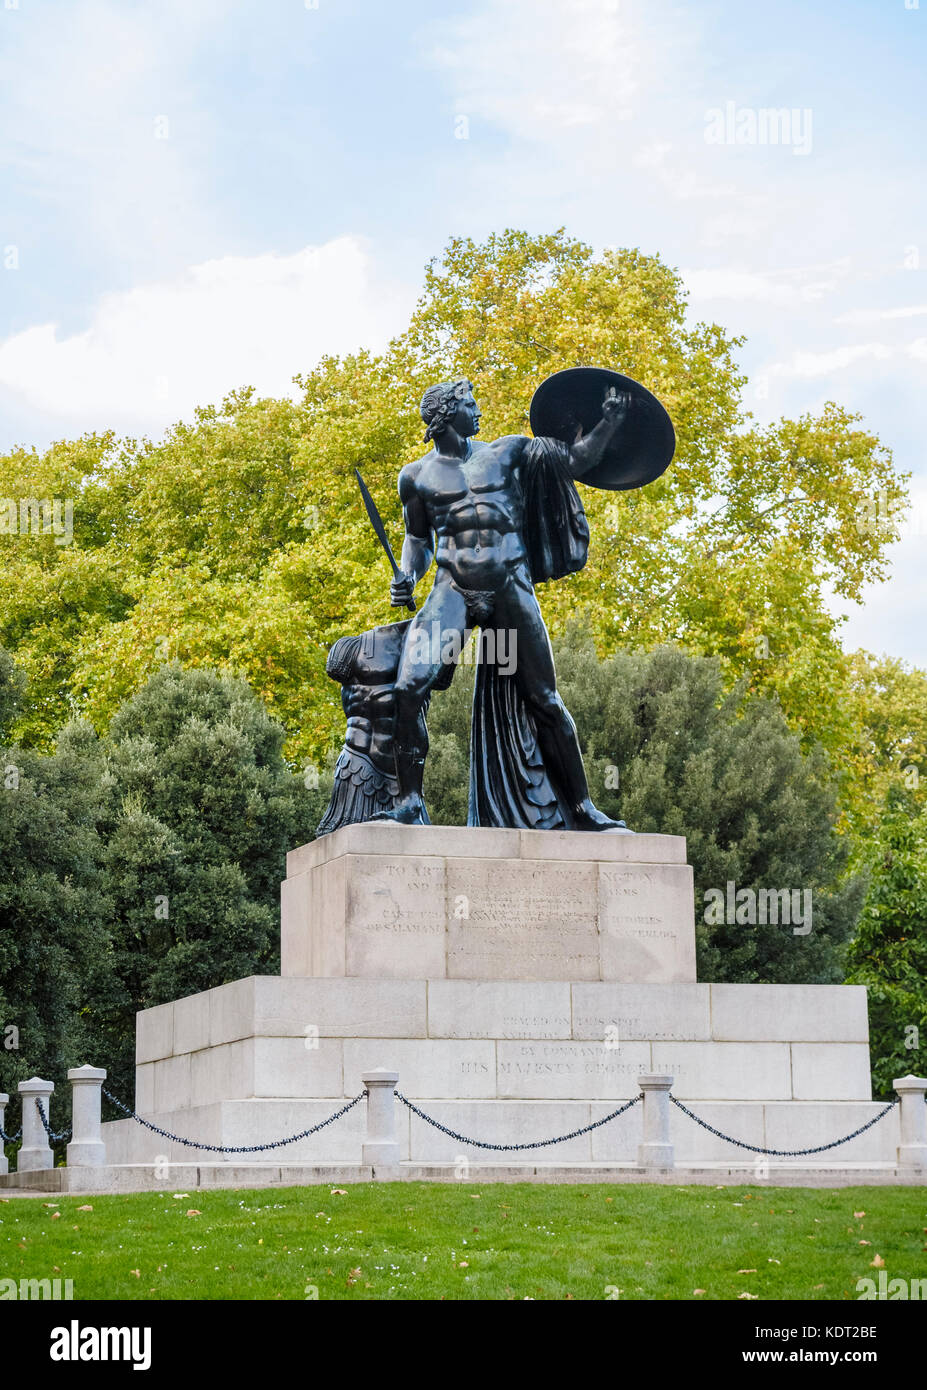 Vista de la gran estatua de bronce de Aquiles en Hyde Park, Londres W1 erigida en honor de Arthur Wellesley, primer duque de Wellington, inscripción sobre zócalo Foto de stock